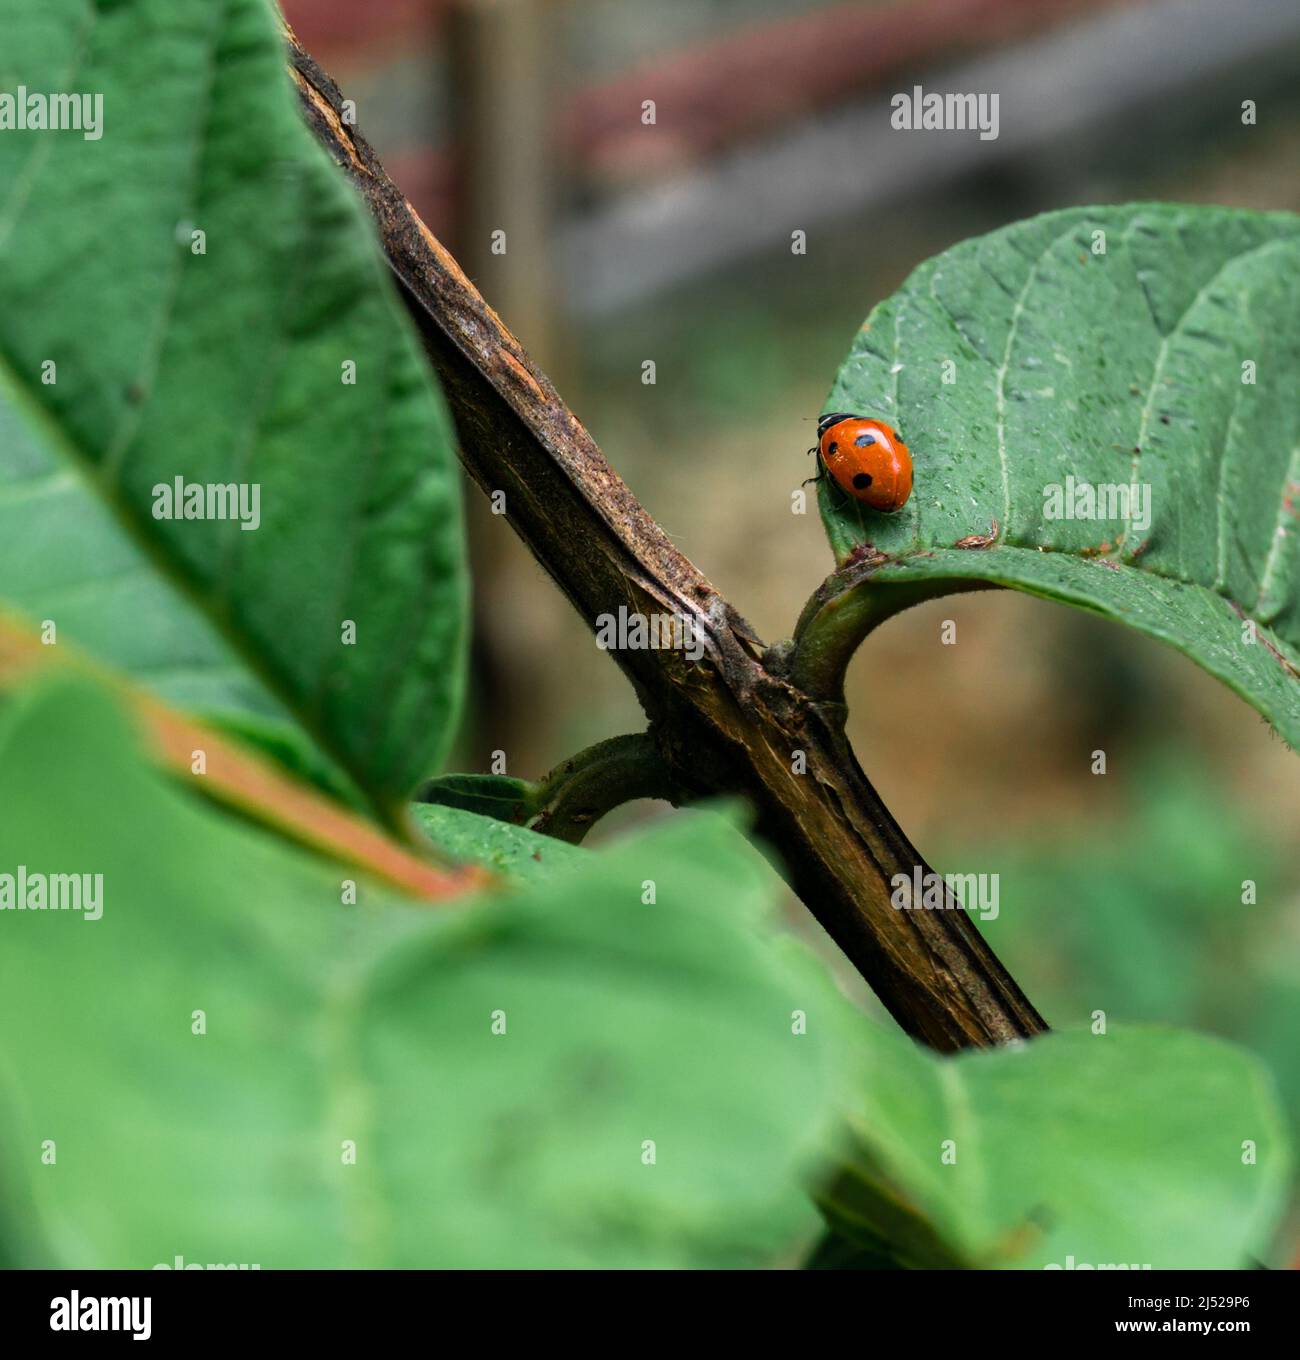 Primo piano di Ladybugs (Coccinellidae) su una foglia verde. Coccinellidae è una famiglia diffusa di piccoli coleotteri Foto Stock